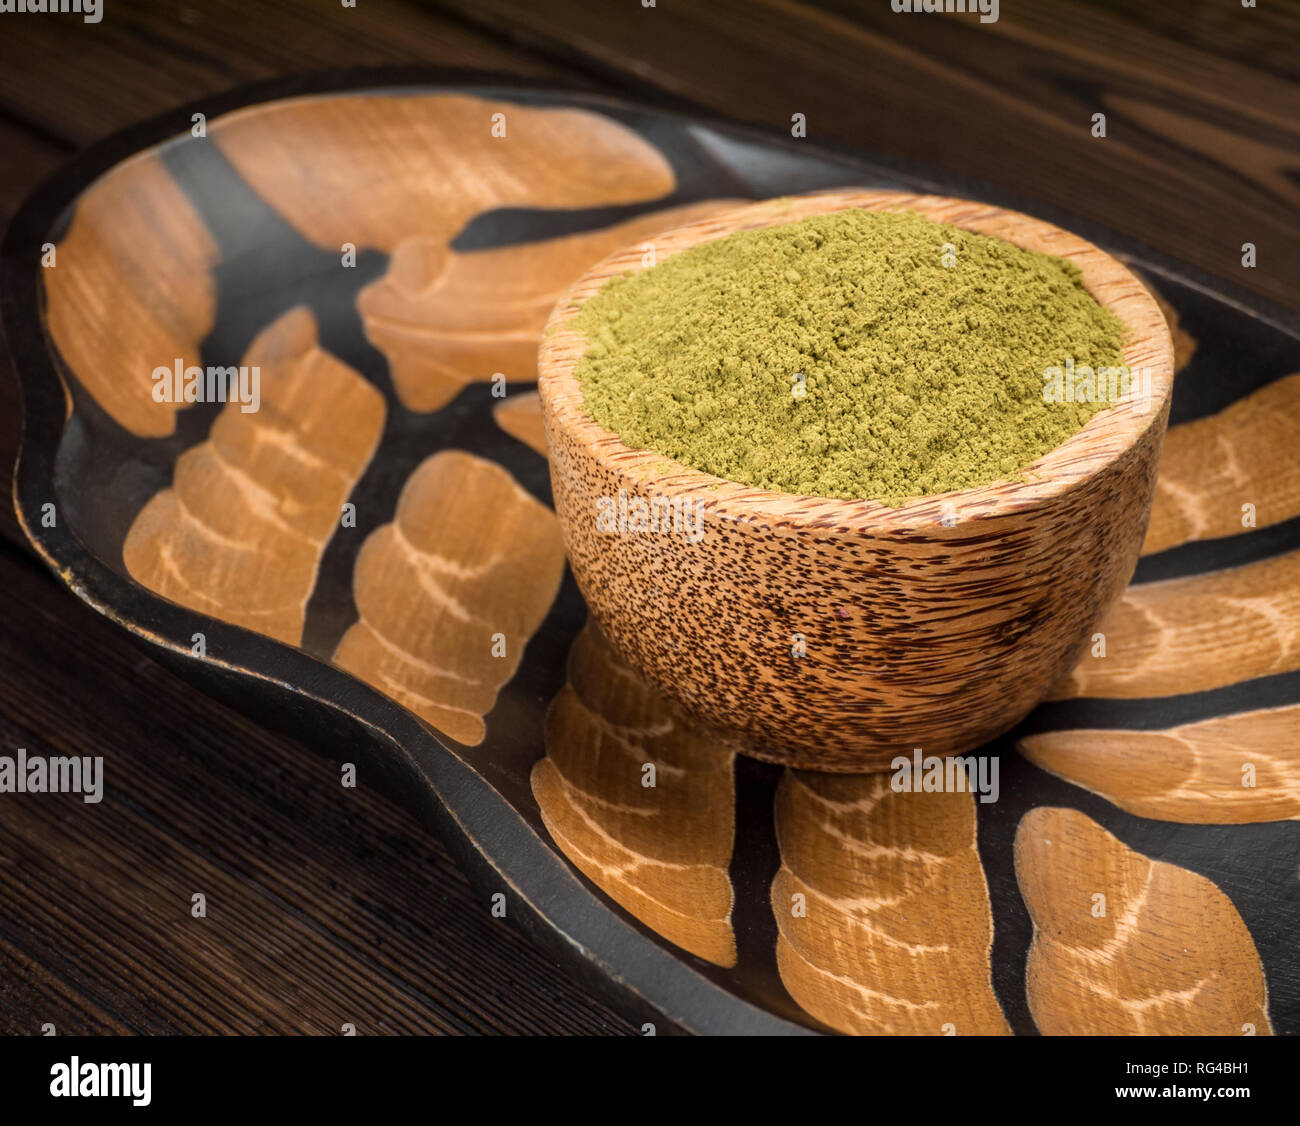 La henna en polvo colorante de cabello en el tazón de coco en la textura de fondo de madera Foto de stock